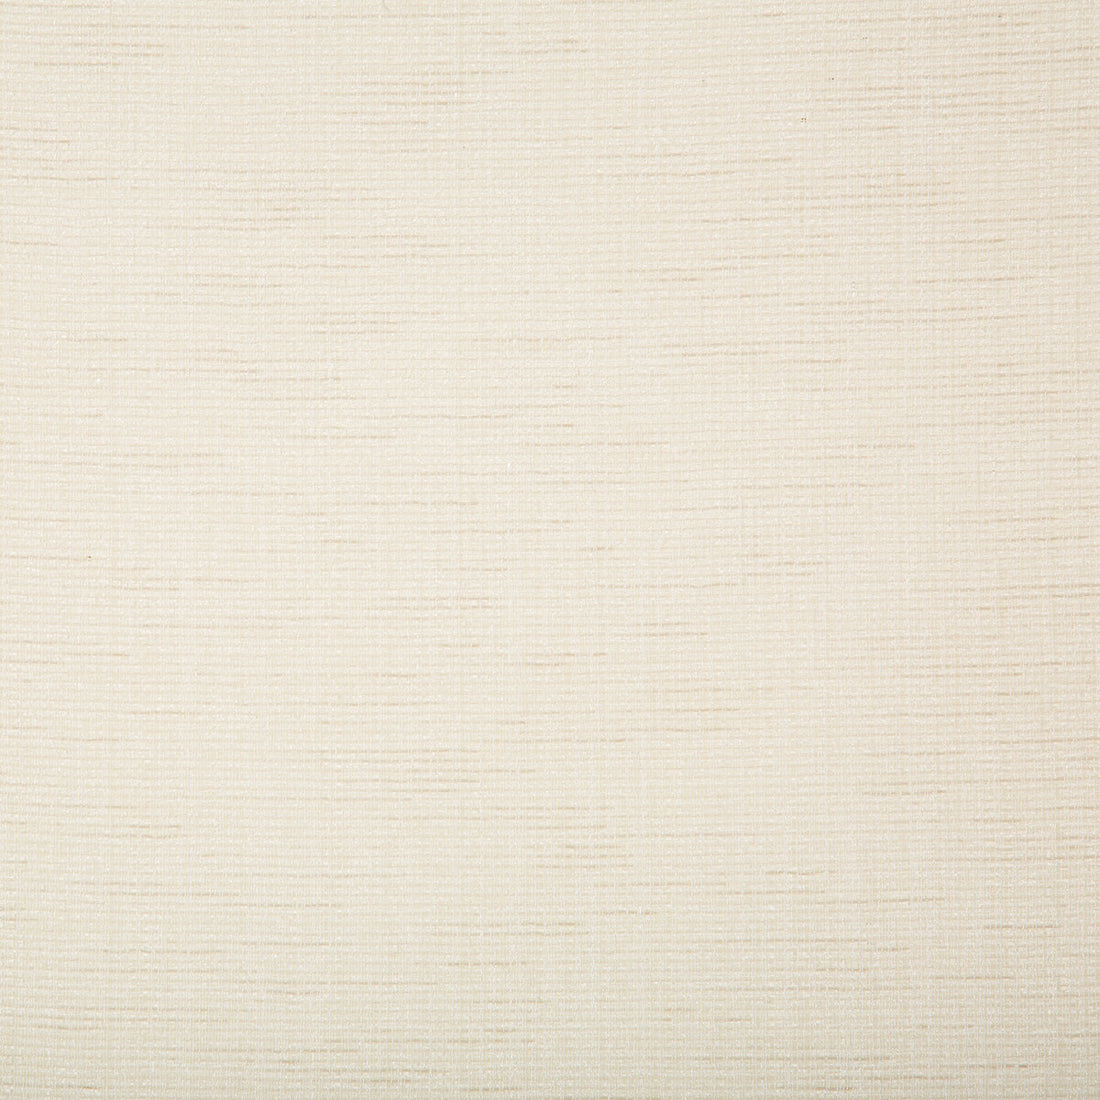 Kravet Basics fabric in 4721-1 color - pattern 4721.1.0 - by Kravet Basics